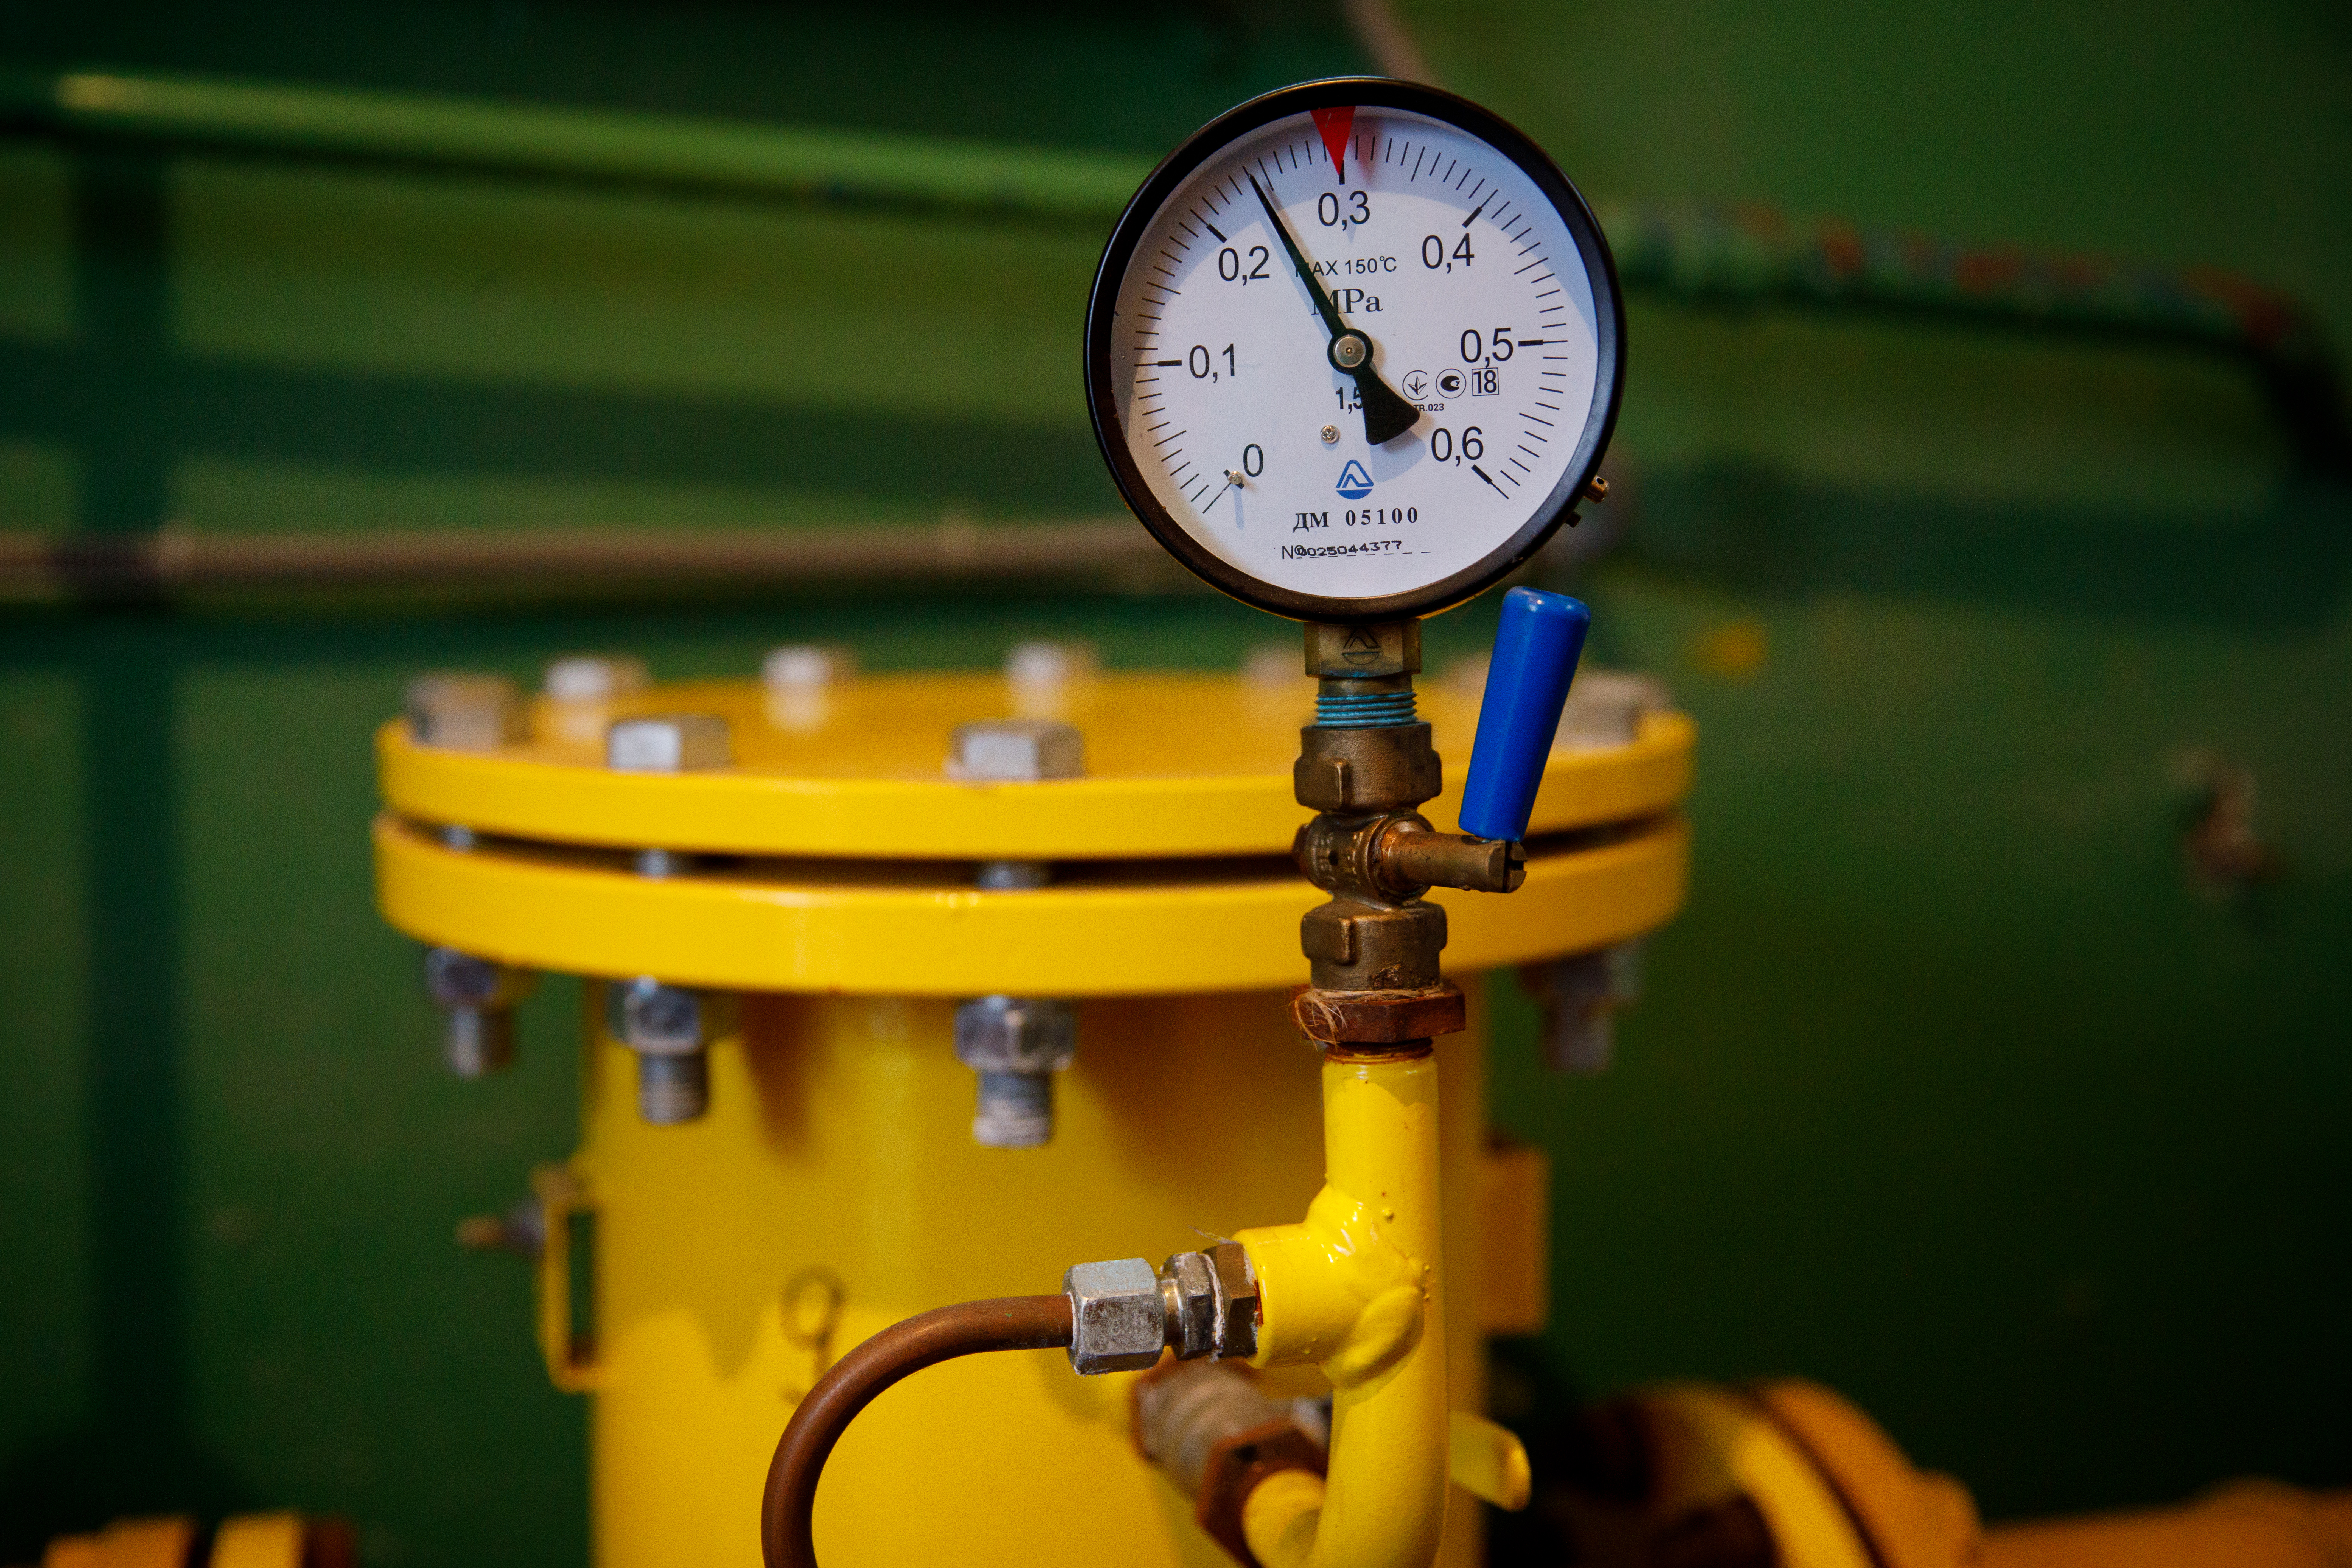 АО «Днепропетровскгаз» предупреждает об угрозе отключения газоснабжения бюджетным учреждениям во вновь созданных ОТГ